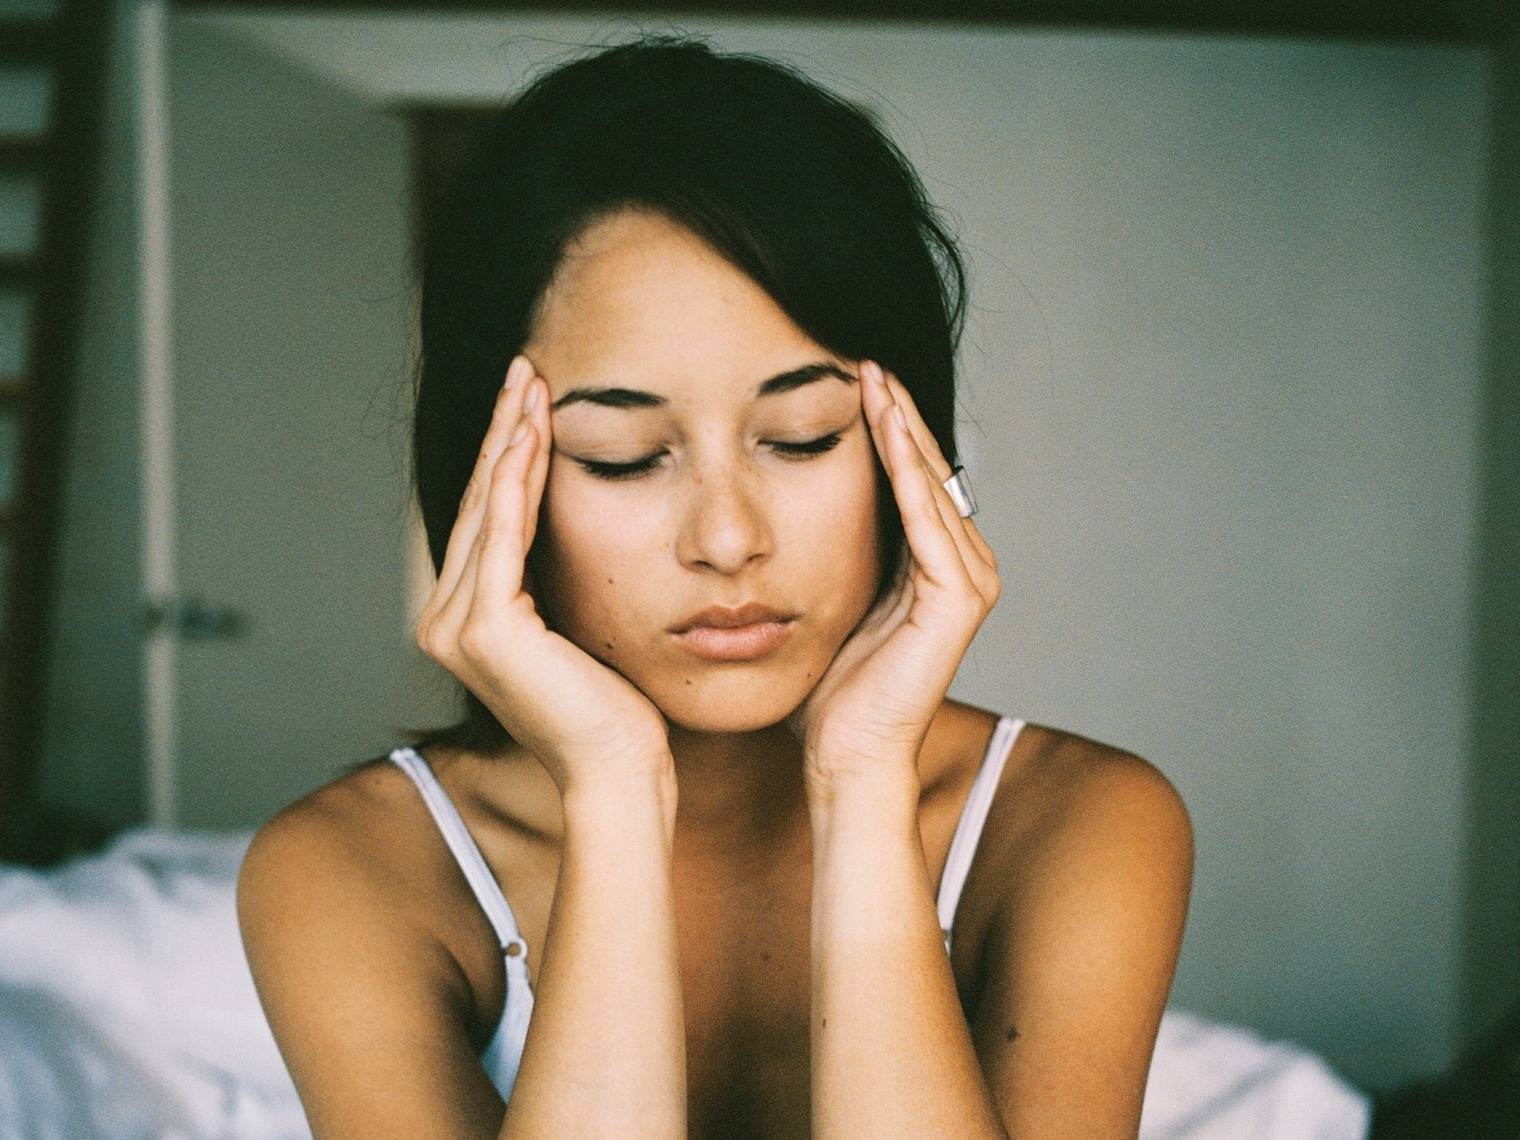 Dor de cabeça, nos olhos e cansaço no maxilar podem ser sinais de doença  pouco conhecida - Notícias - R7 Saúde